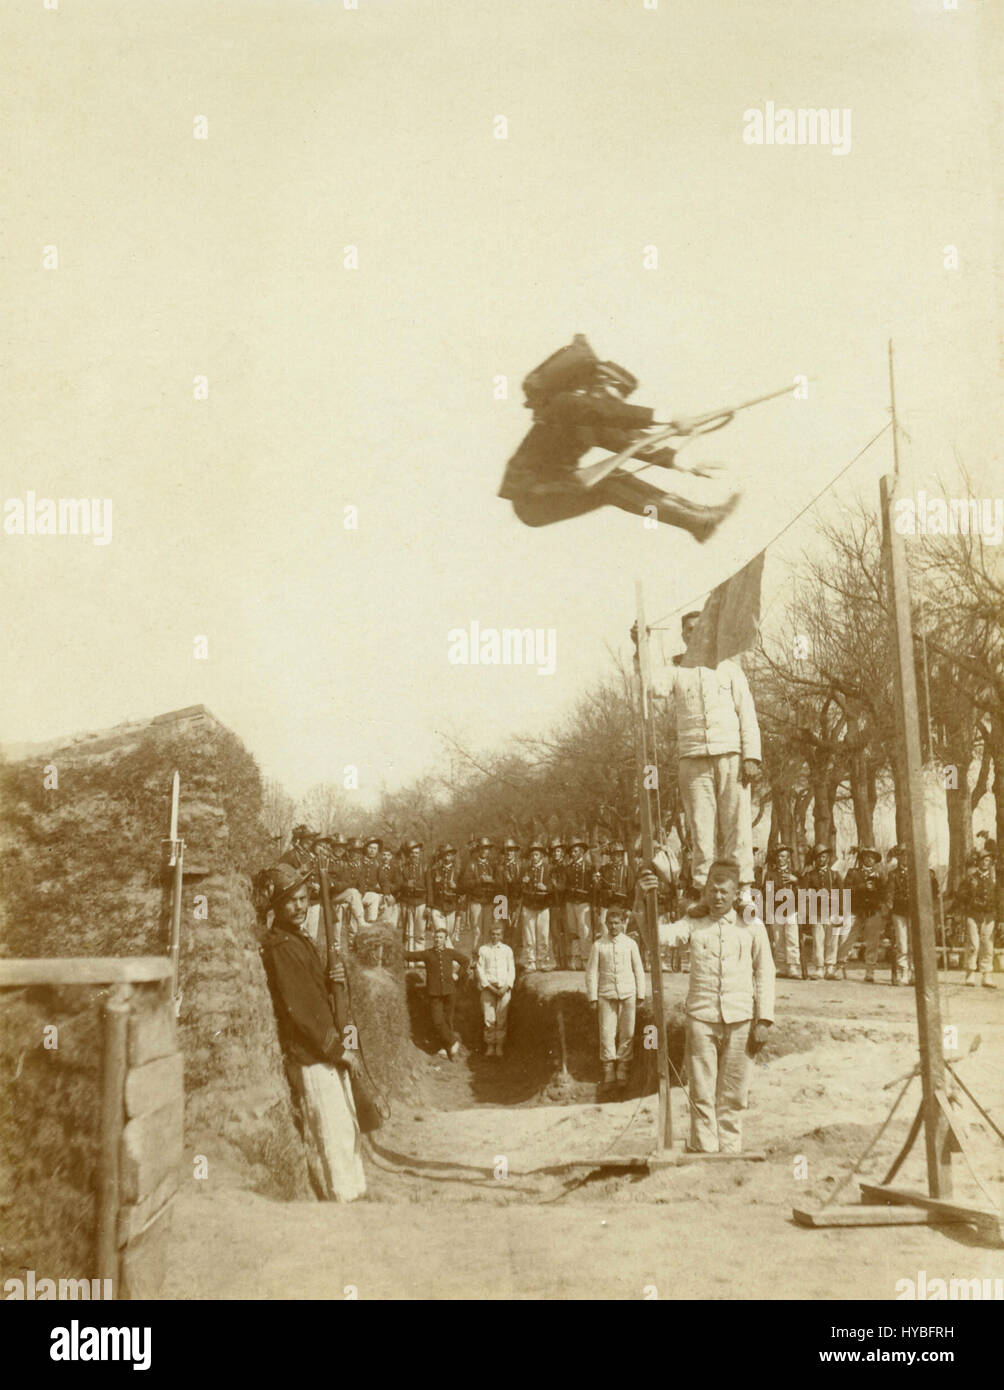 Italian Royal Army training, 1910 Stock Photo